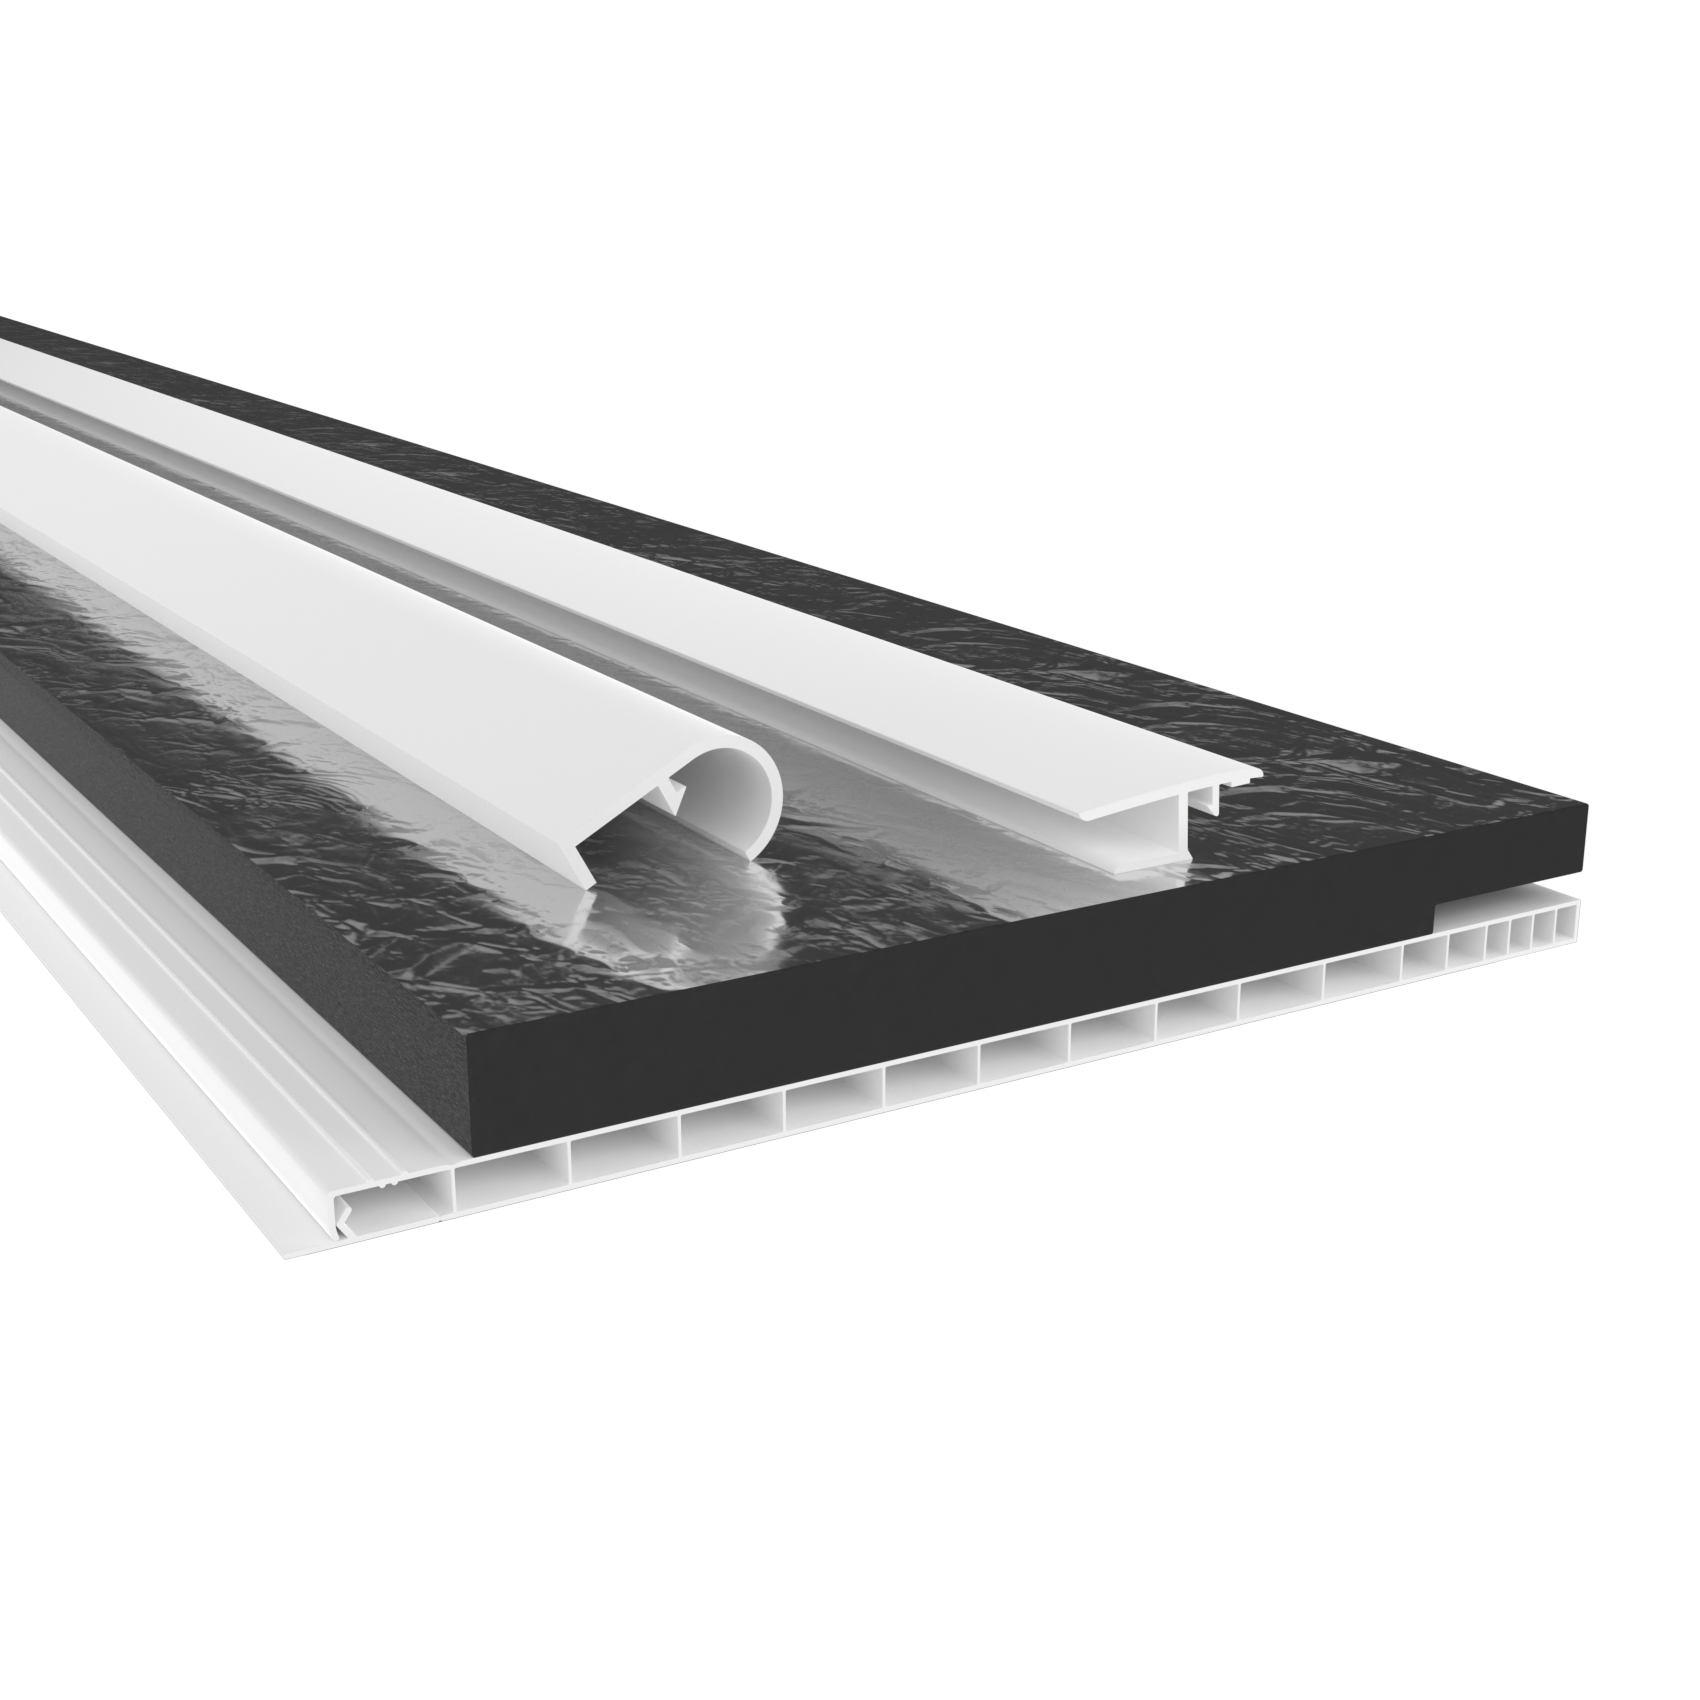 HEXIM Rollladenkastendeckel mit Dämmung, Rollladendeckel PVC Rollladen Profile Revisionsklappe Fenster